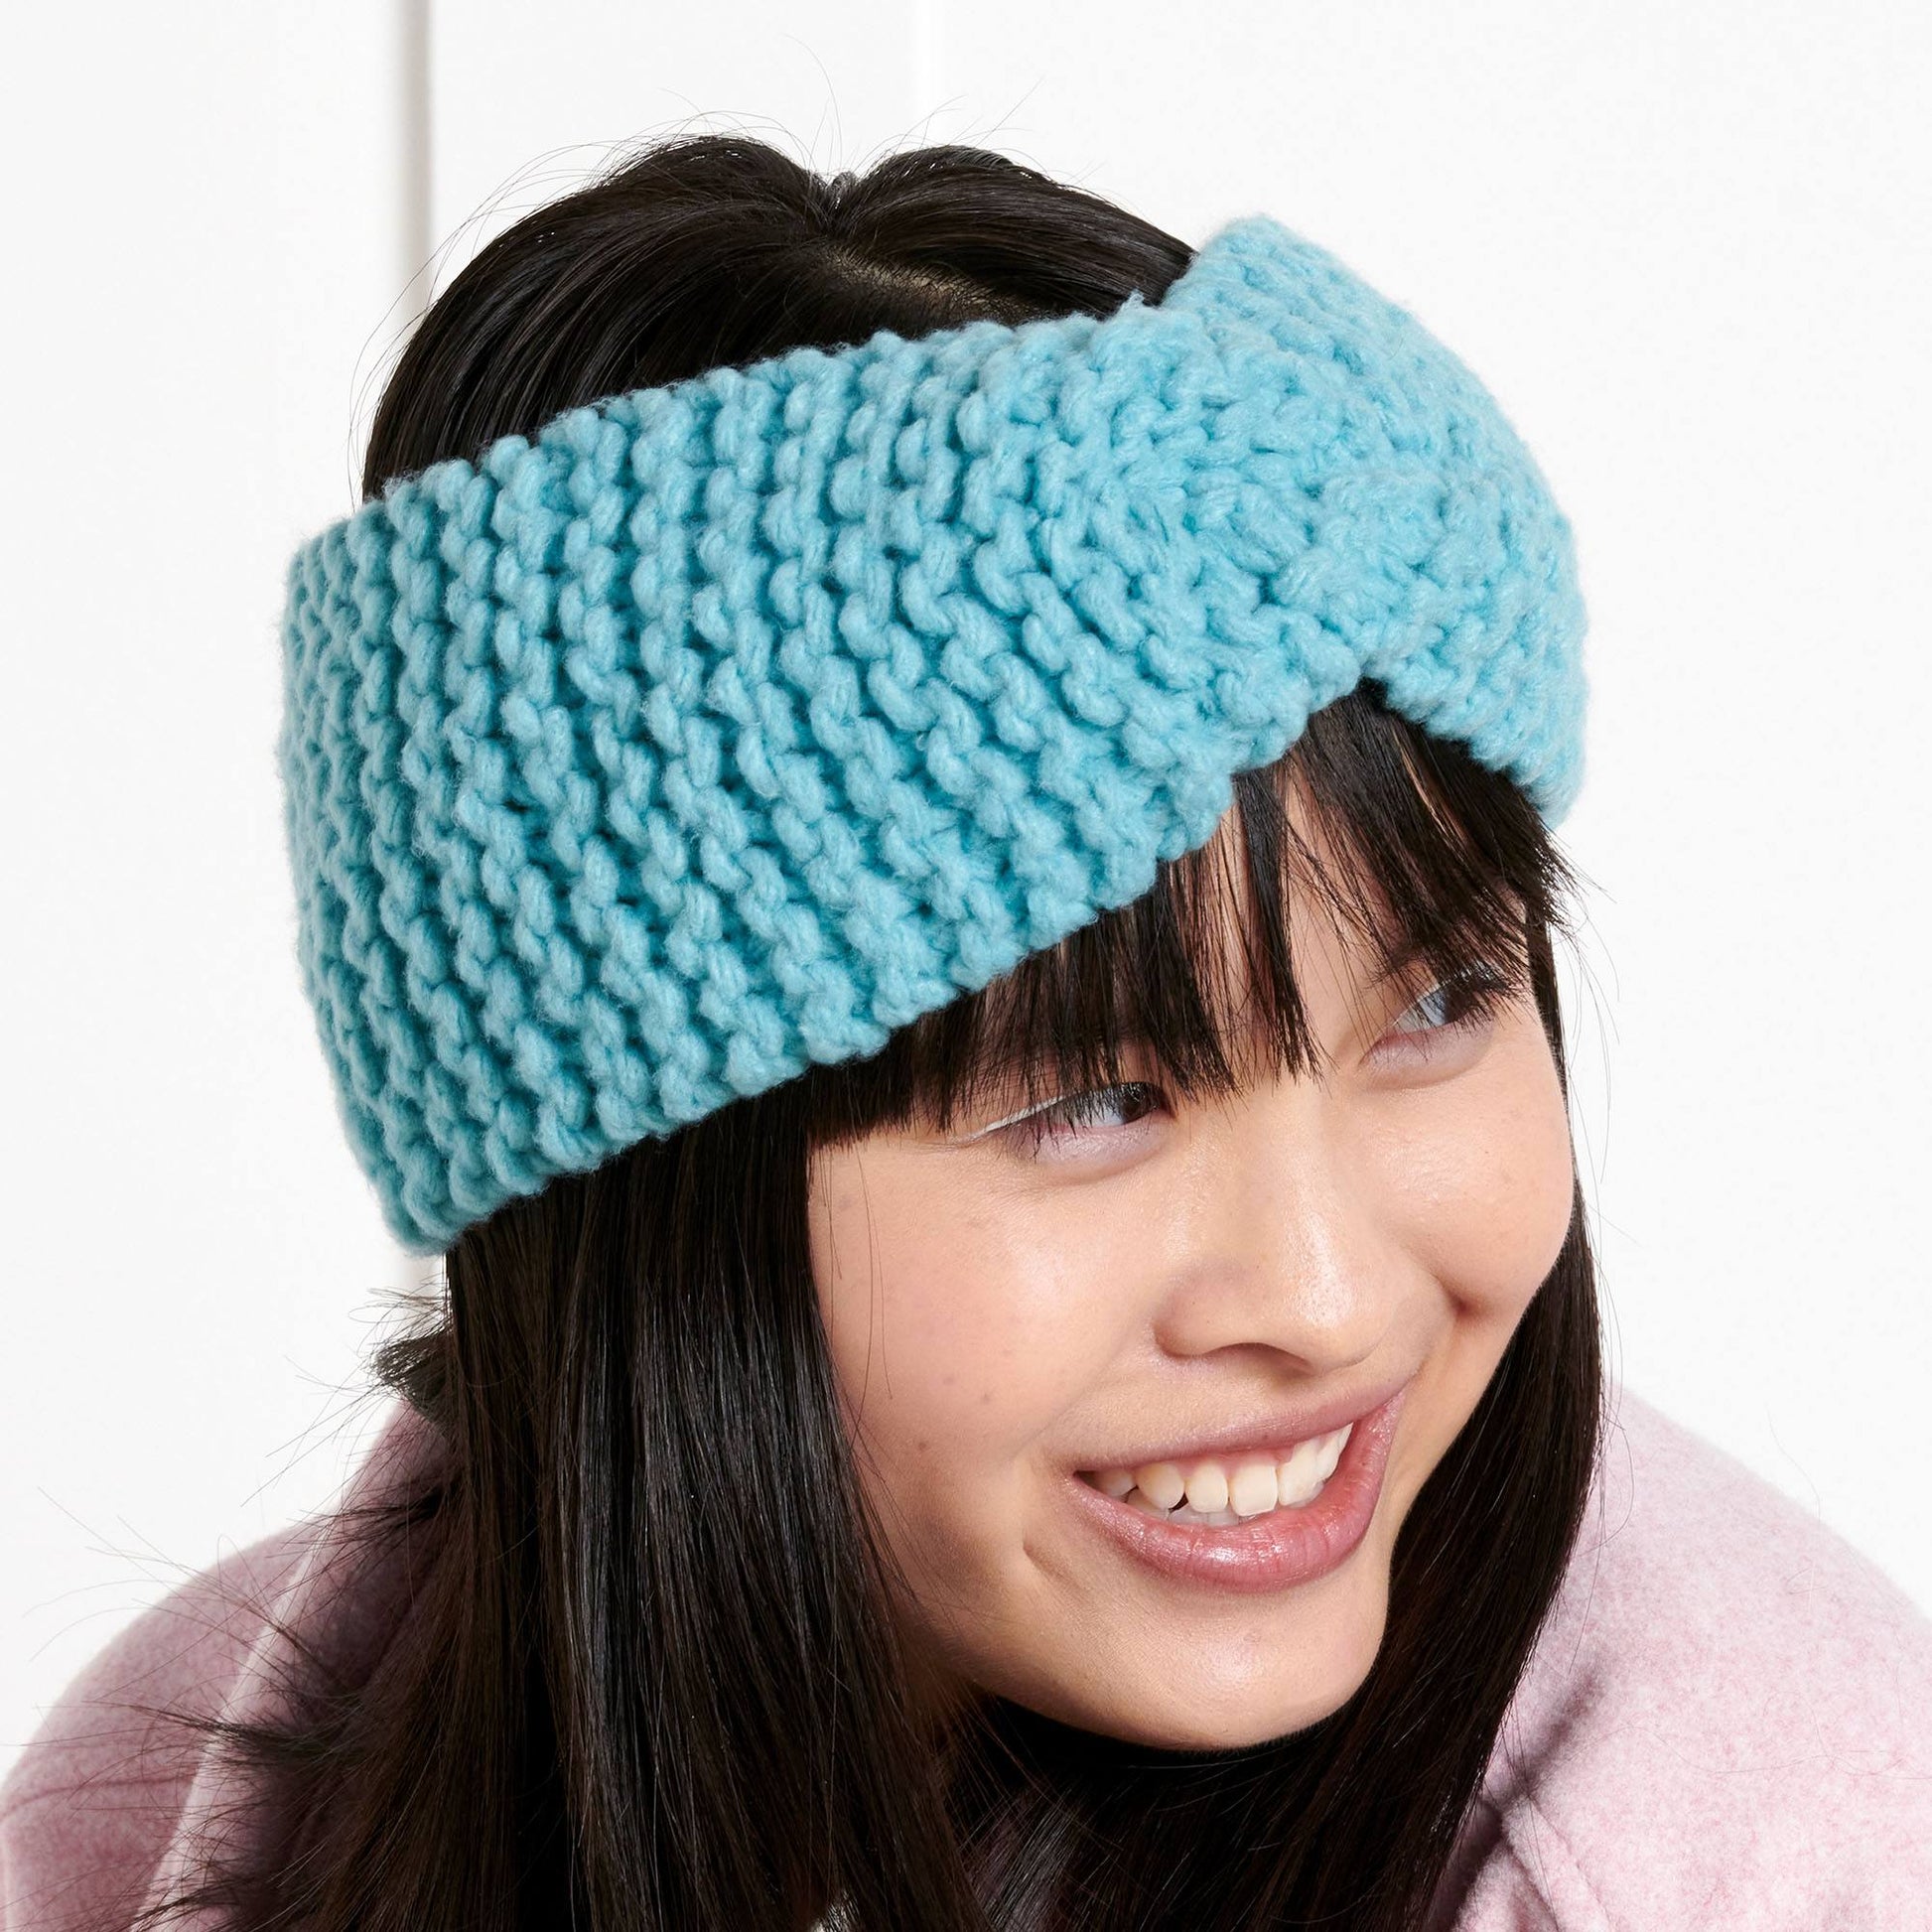 The Knit Kit- Beginner's Headwrap